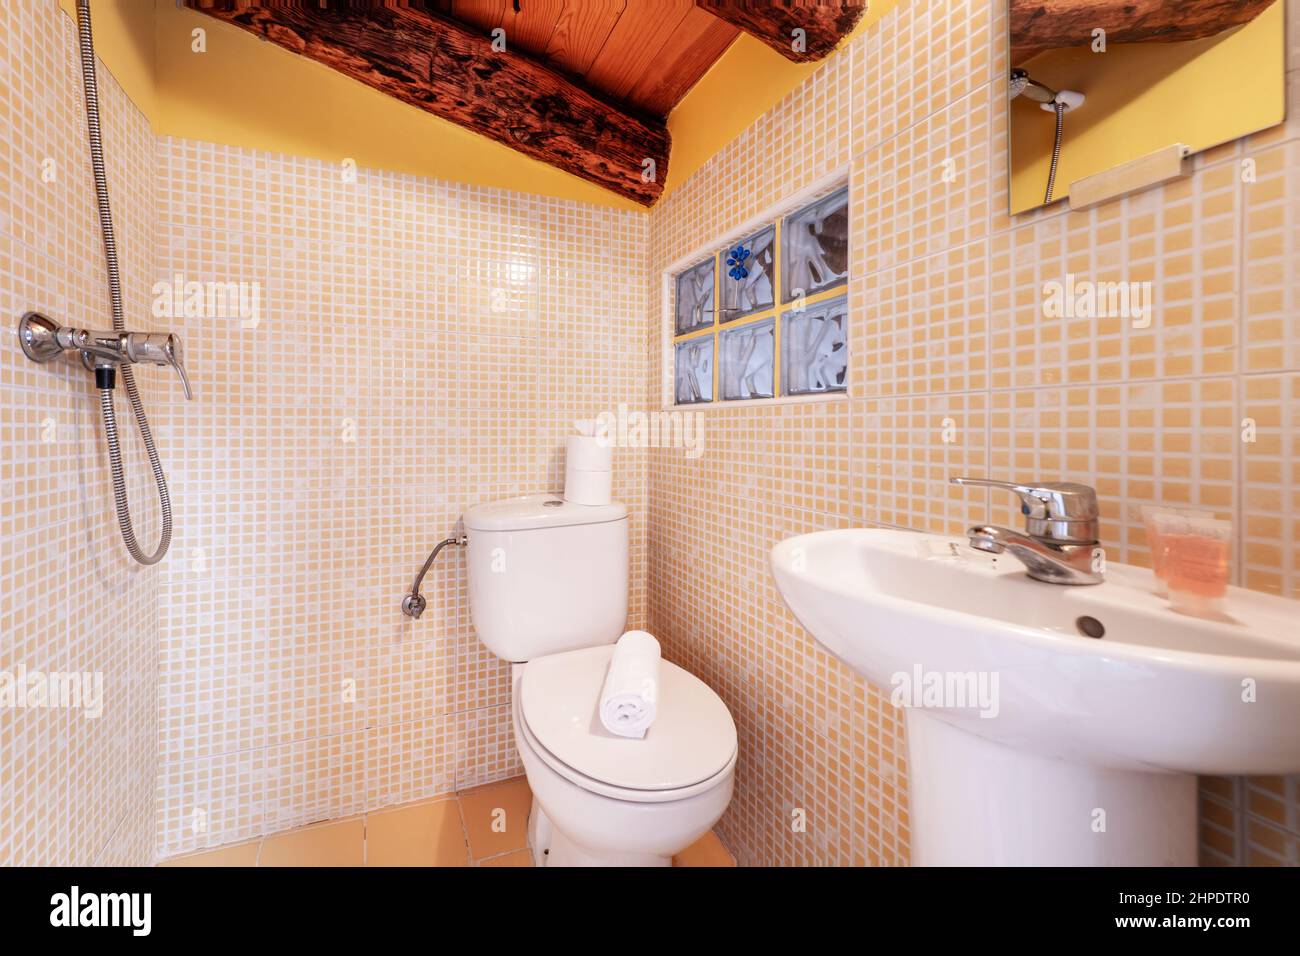 Salle de bains avec douche murale, lavabo en porcelaine blanche, miroir mural carré, carrelage en mosaïque jaune et poutres apparentes Banque D'Images